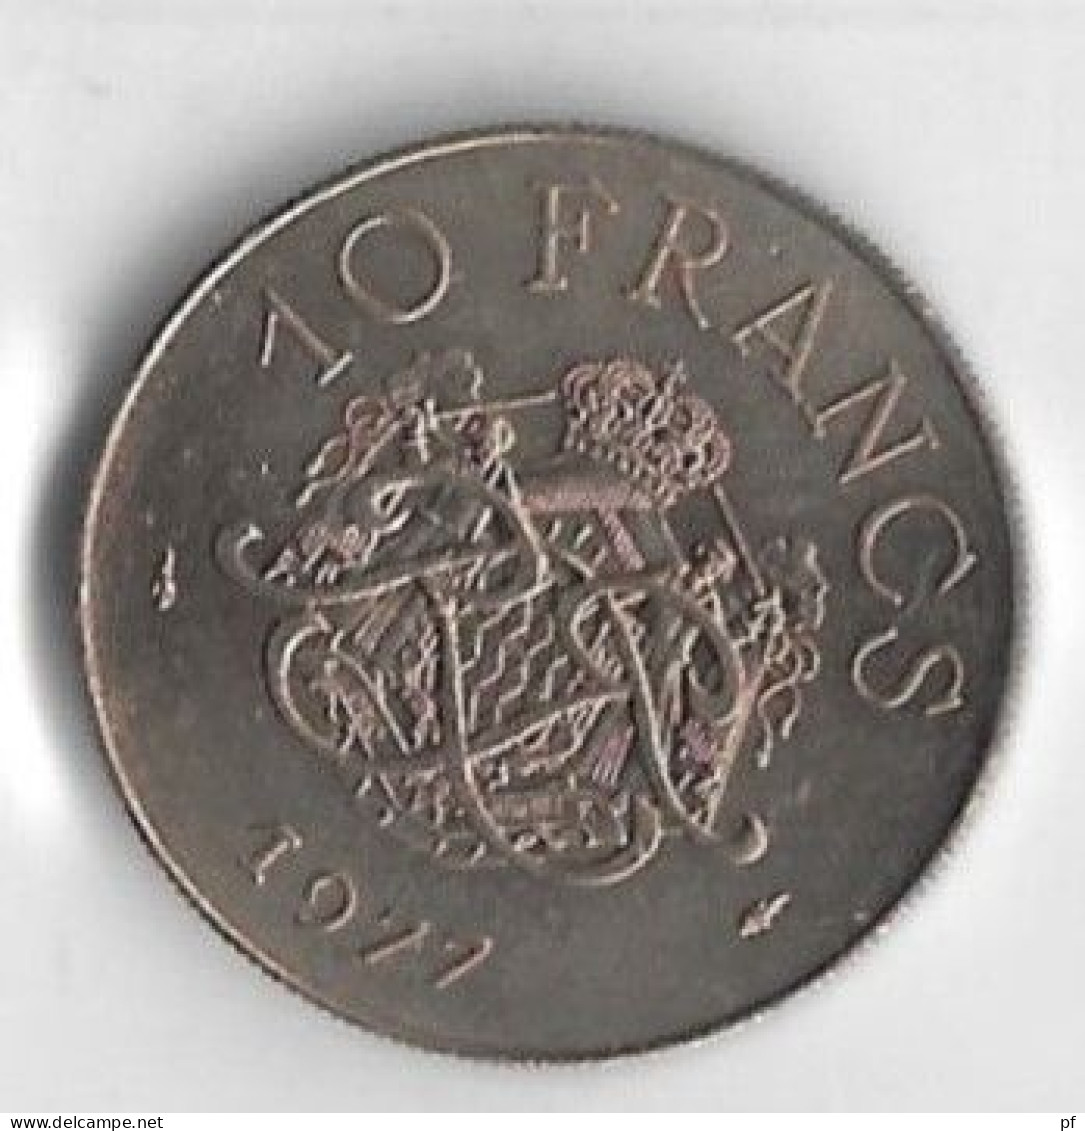 8 pieces de Monaco 1977 :   1 - 5 -10 - 20 centimes + 1/2 - 1 - 5 - 10 francs 1977  UNC/FDC